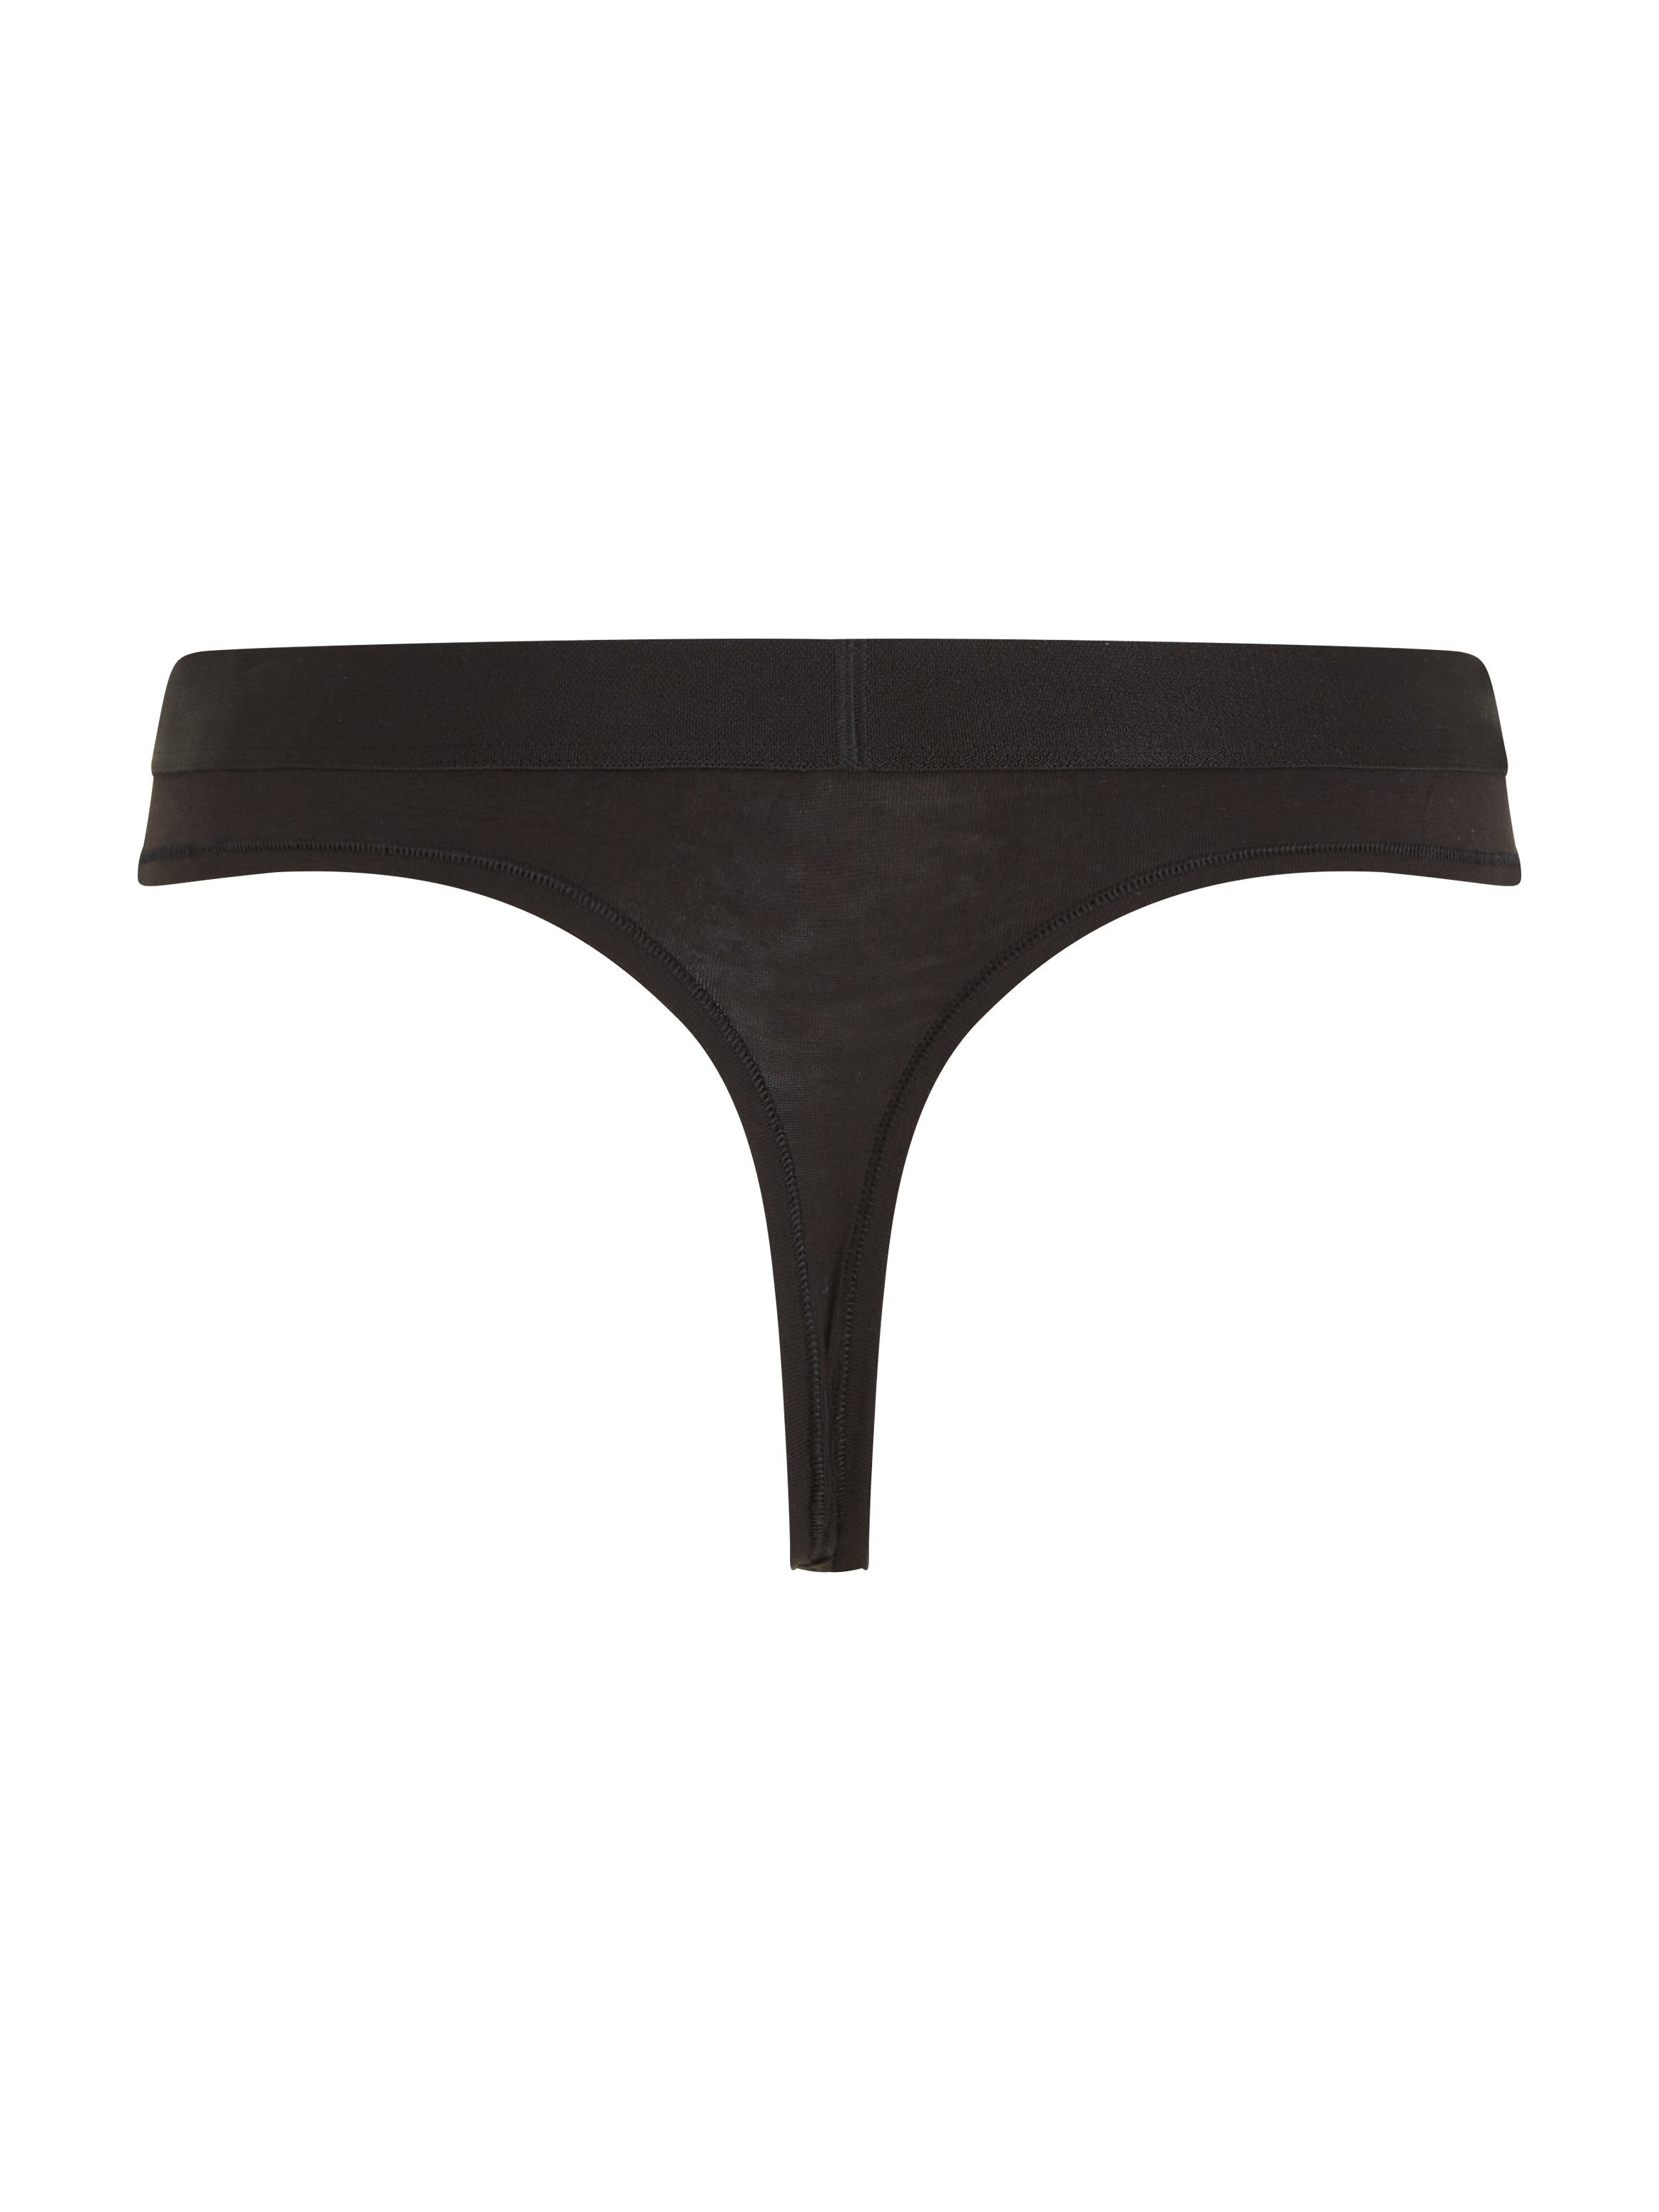 Tommy Hilfiger Underwear Slip THONG Hilfiger Markenlabel mit Black Tommy